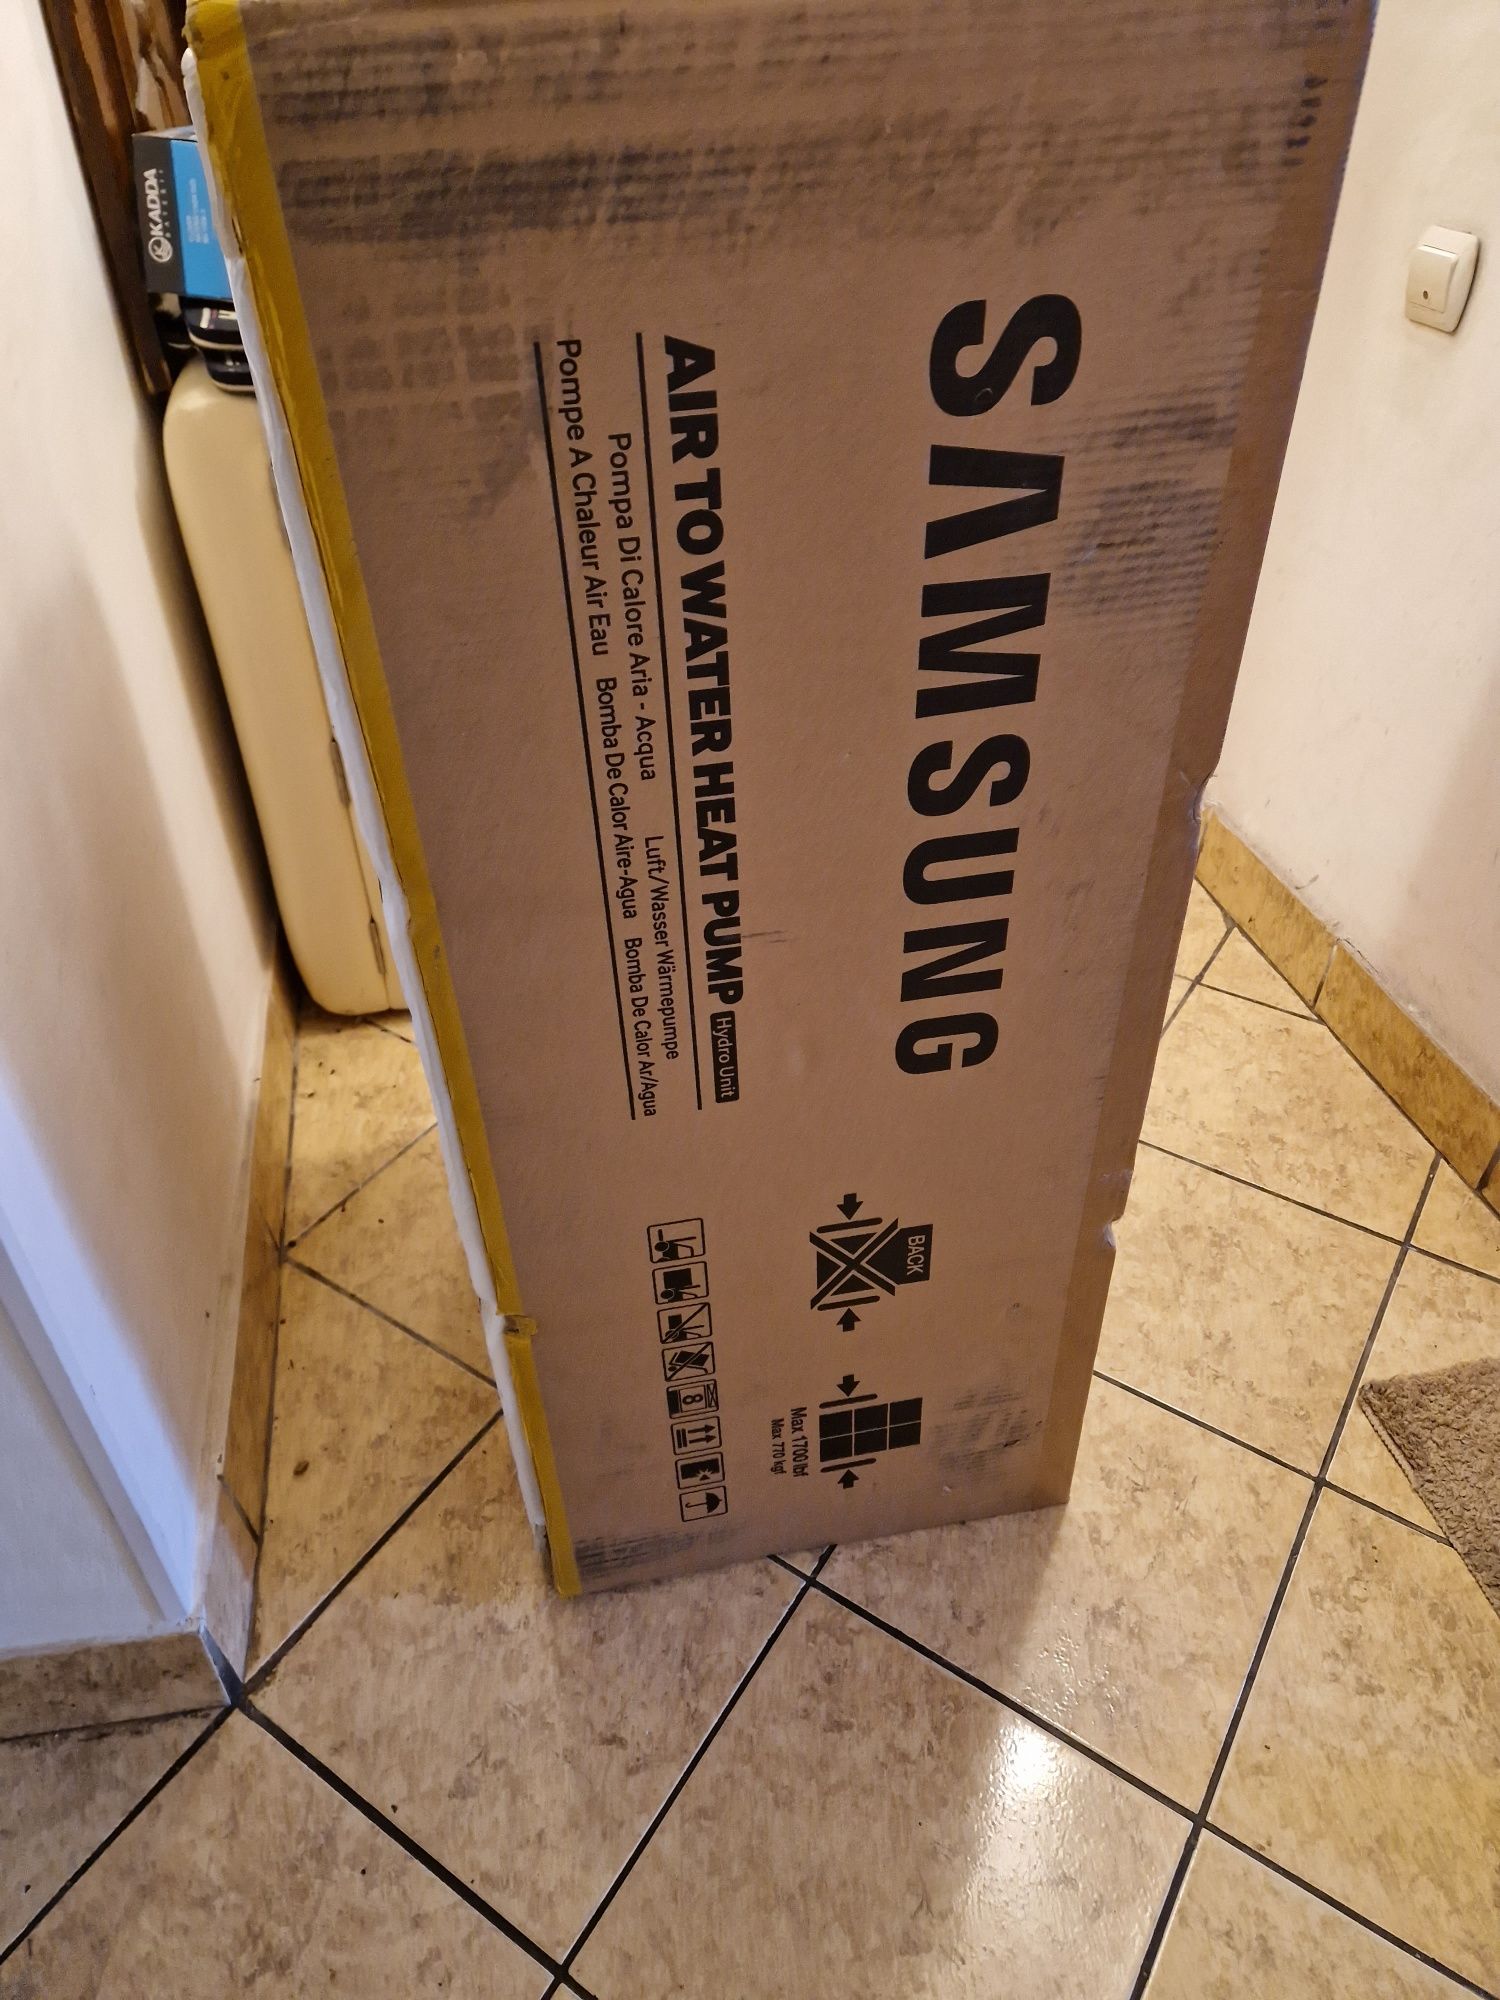 Pompa de caldura Samsung 9kW,monoblock, ,nouă în cutie, model  AE090RN